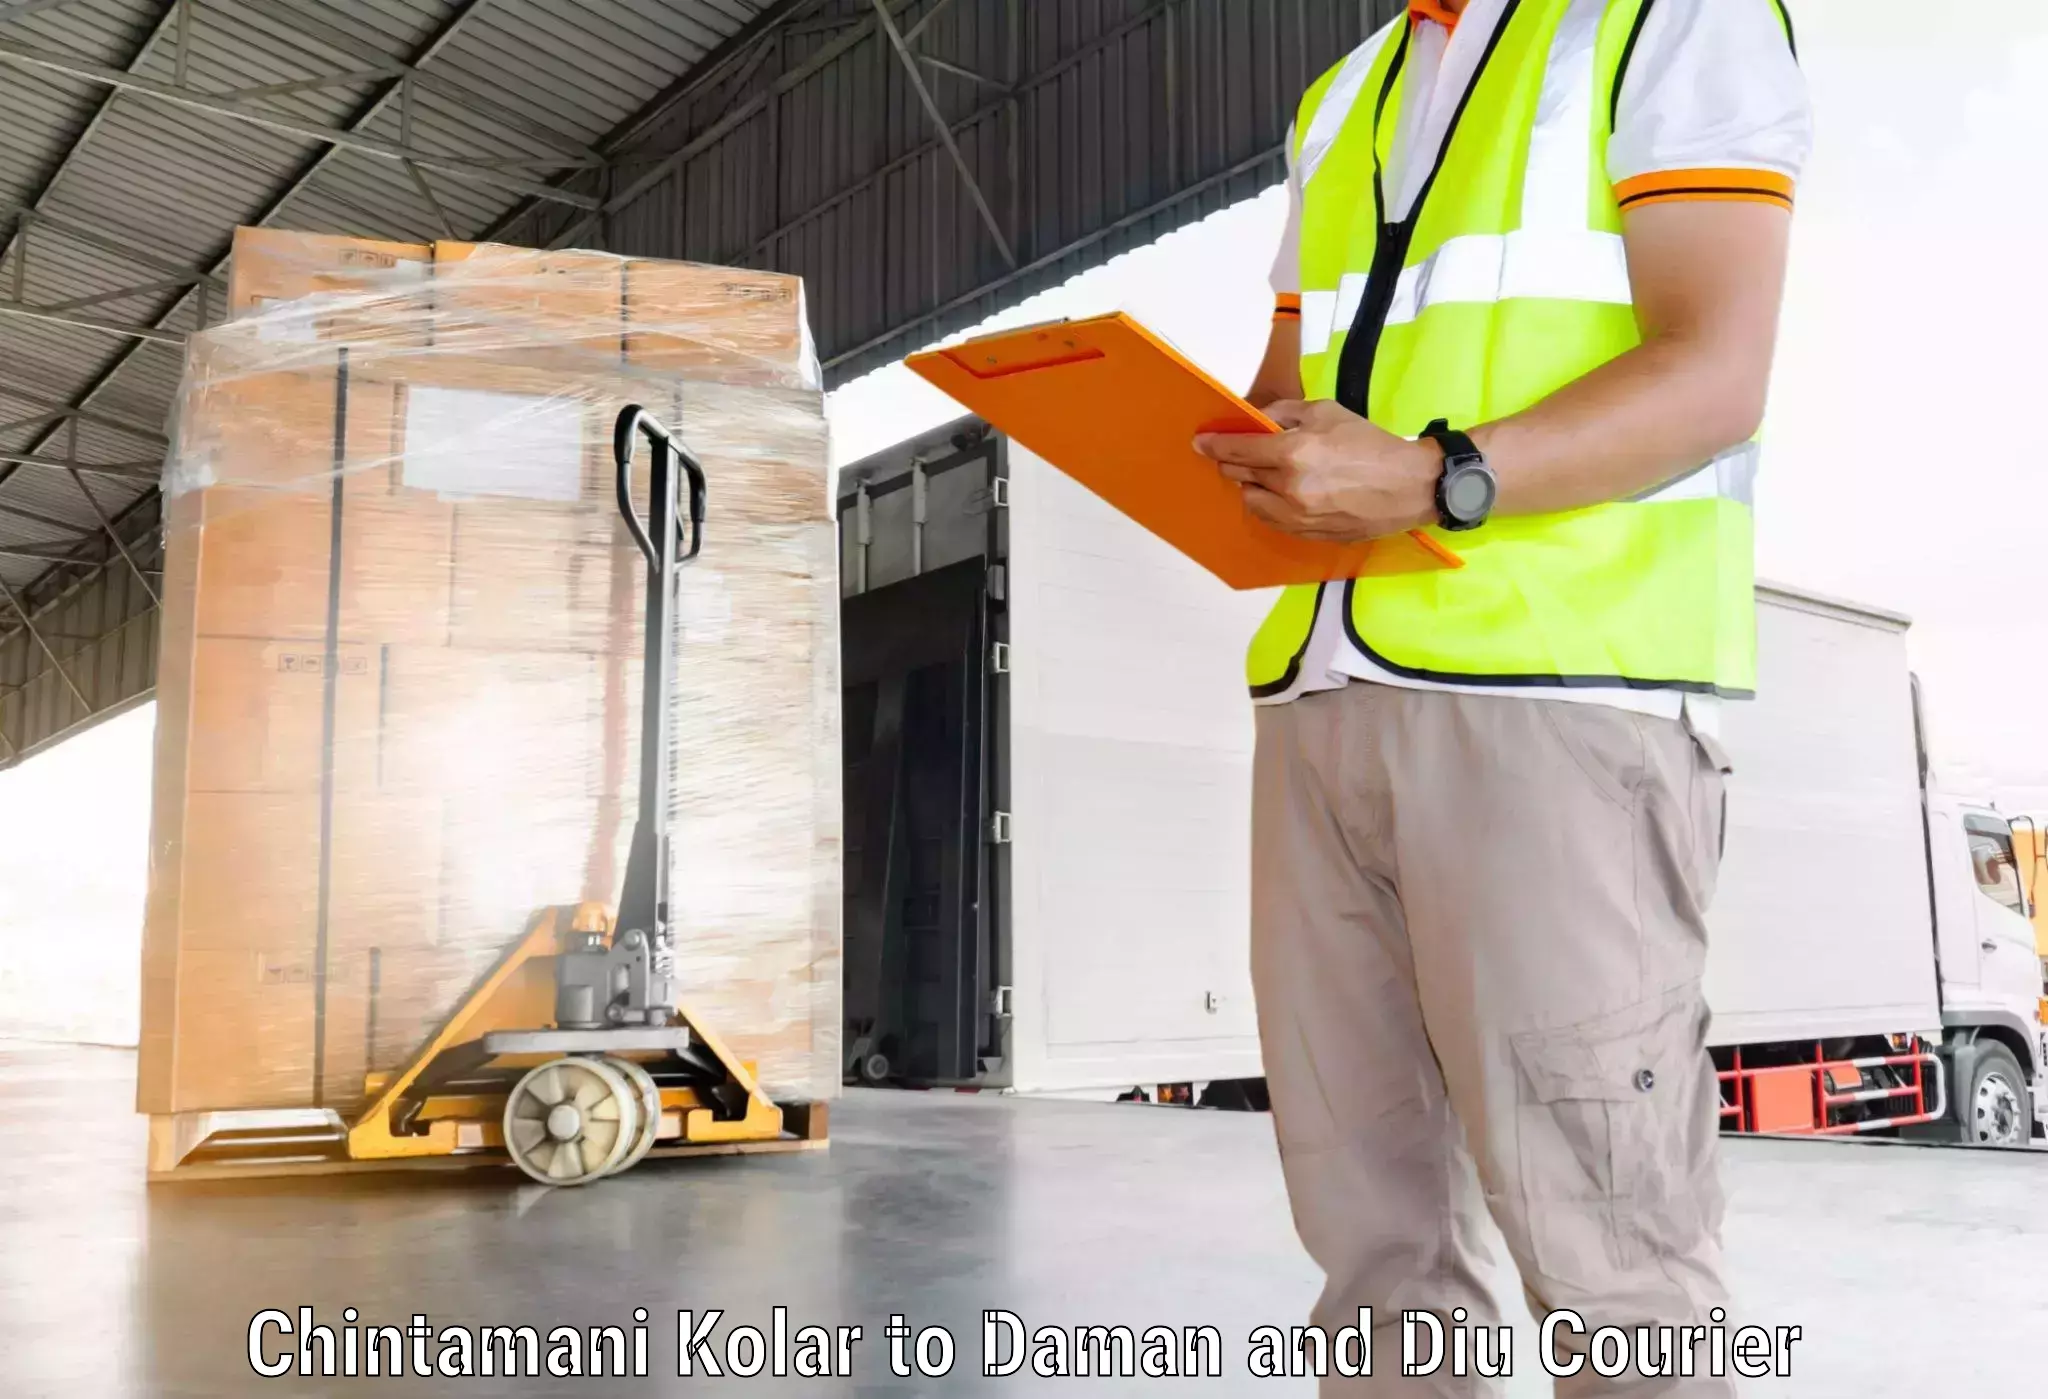 Professional courier handling Chintamani Kolar to Daman